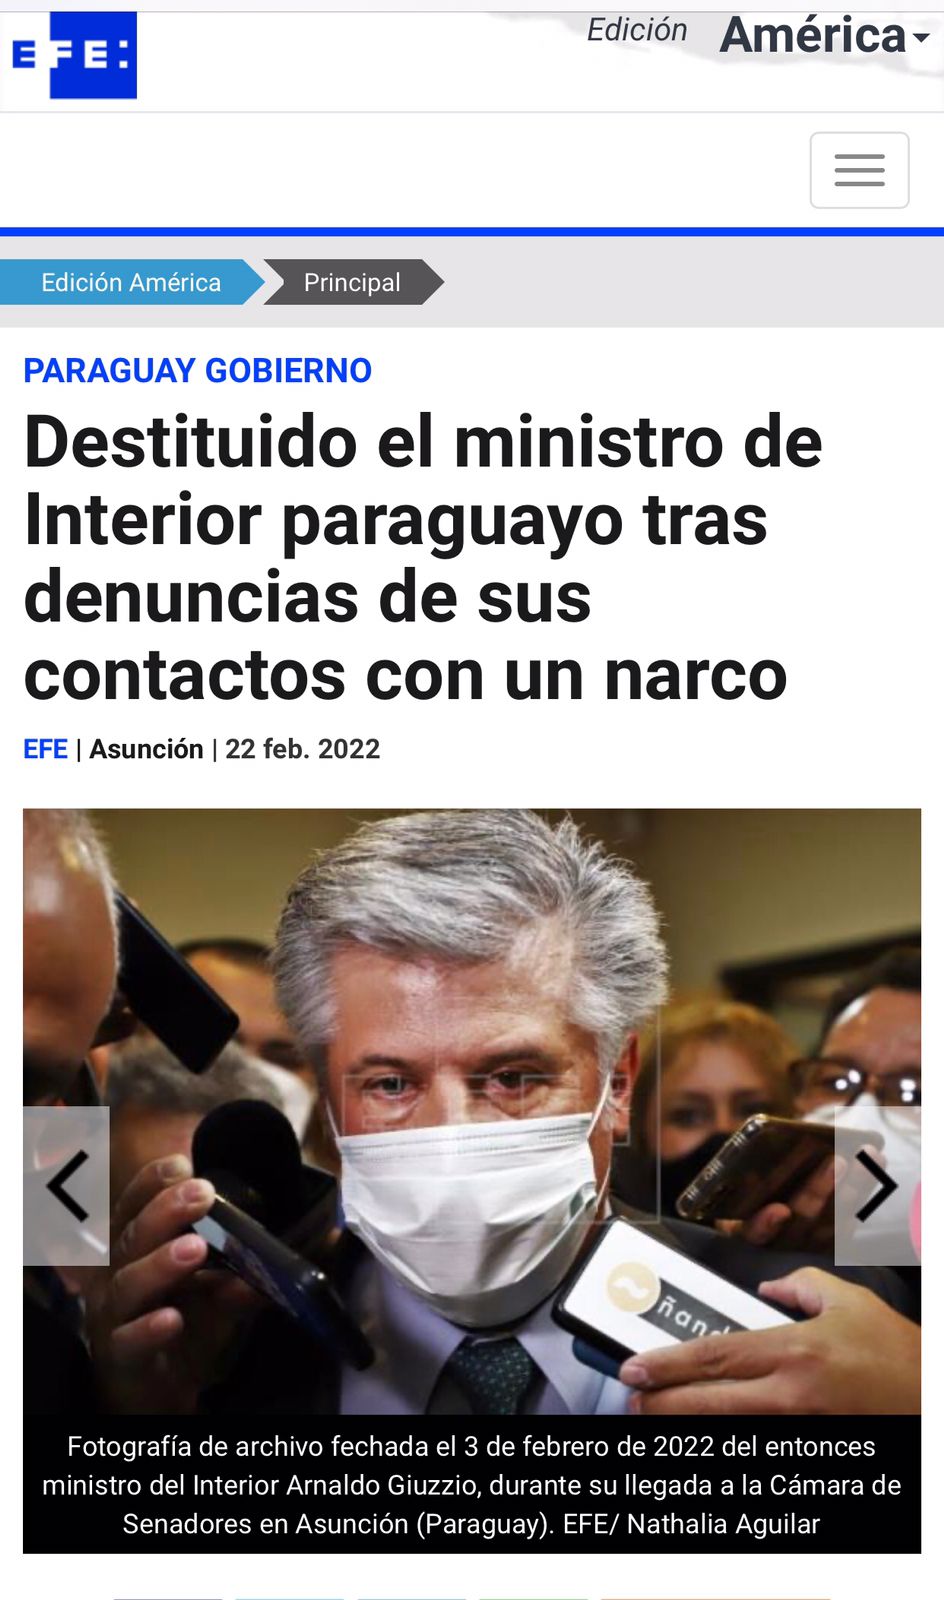 "Destituido el ministro de Interior paraguayo tras denuncias de sus contactos con un narco"